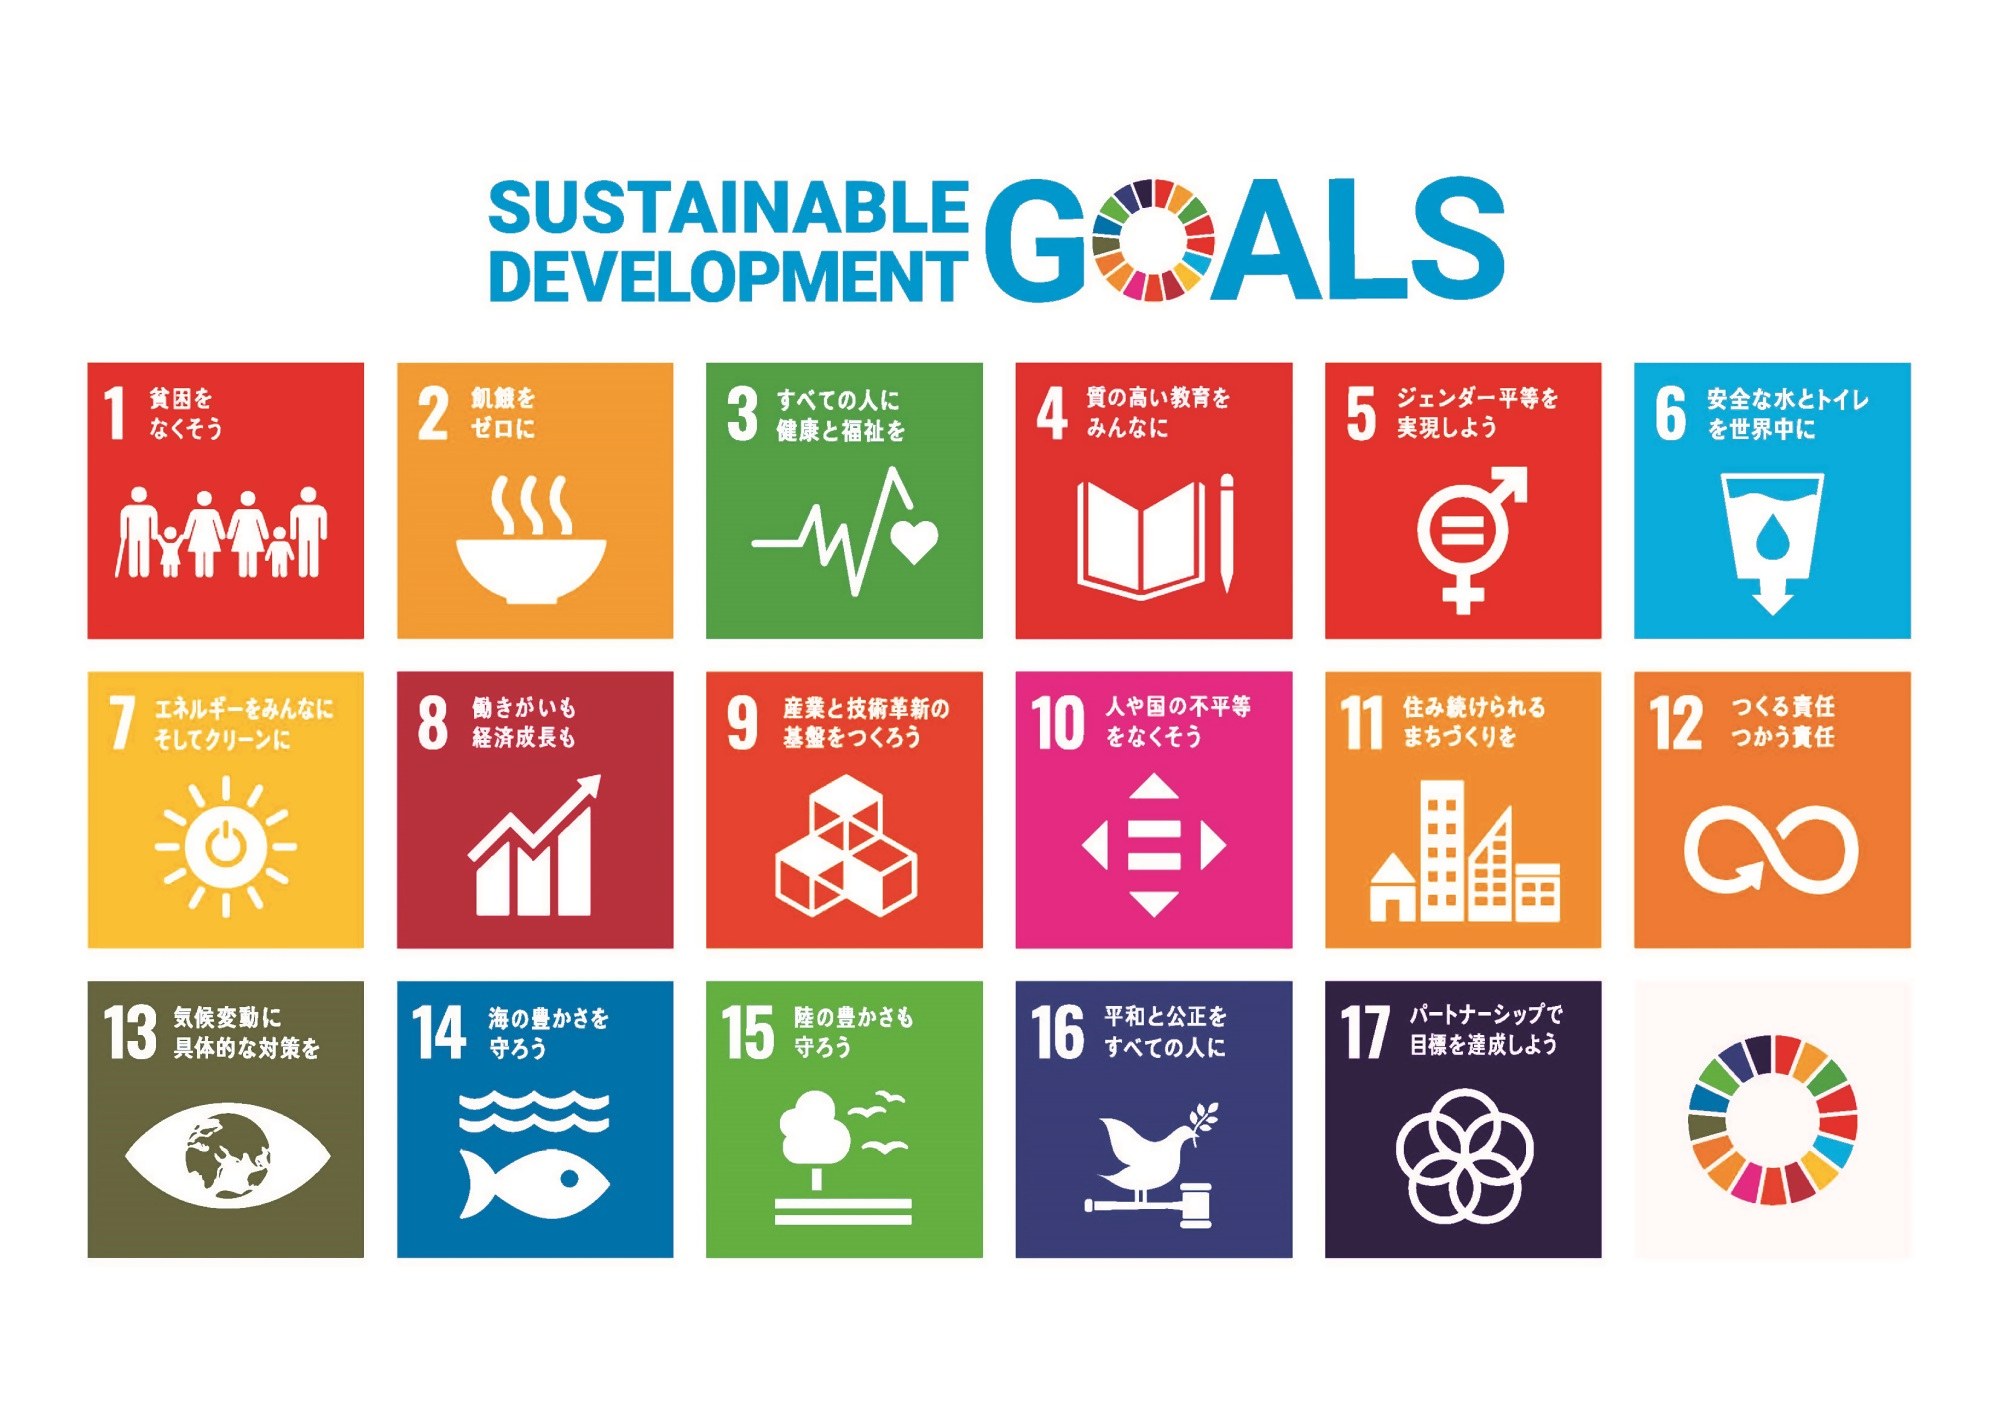 SDGグローバル指標 1貧困をなくそう、2飢餓をゼロに、3すべての人に健康と福祉を、4質の高い教育を実現しよう、5ジェンダー平等を実現しよう、6安全な水とトイレを世界中に、7エネルギーをみんなにそしてクリーンに、8働きがいも経済成長も、9産業と技術革新の基盤をつくろう、10人や国の不平等をなくそう、11住み続けられるまちづくりを、12つくる責任つかう責任、13気候変動に具体的な対策を、14海の豊かさを守ろう、15陸の豊かさも守ろう、16平和と公正をすべての人に、17パートナーシップで目標を達成しよう